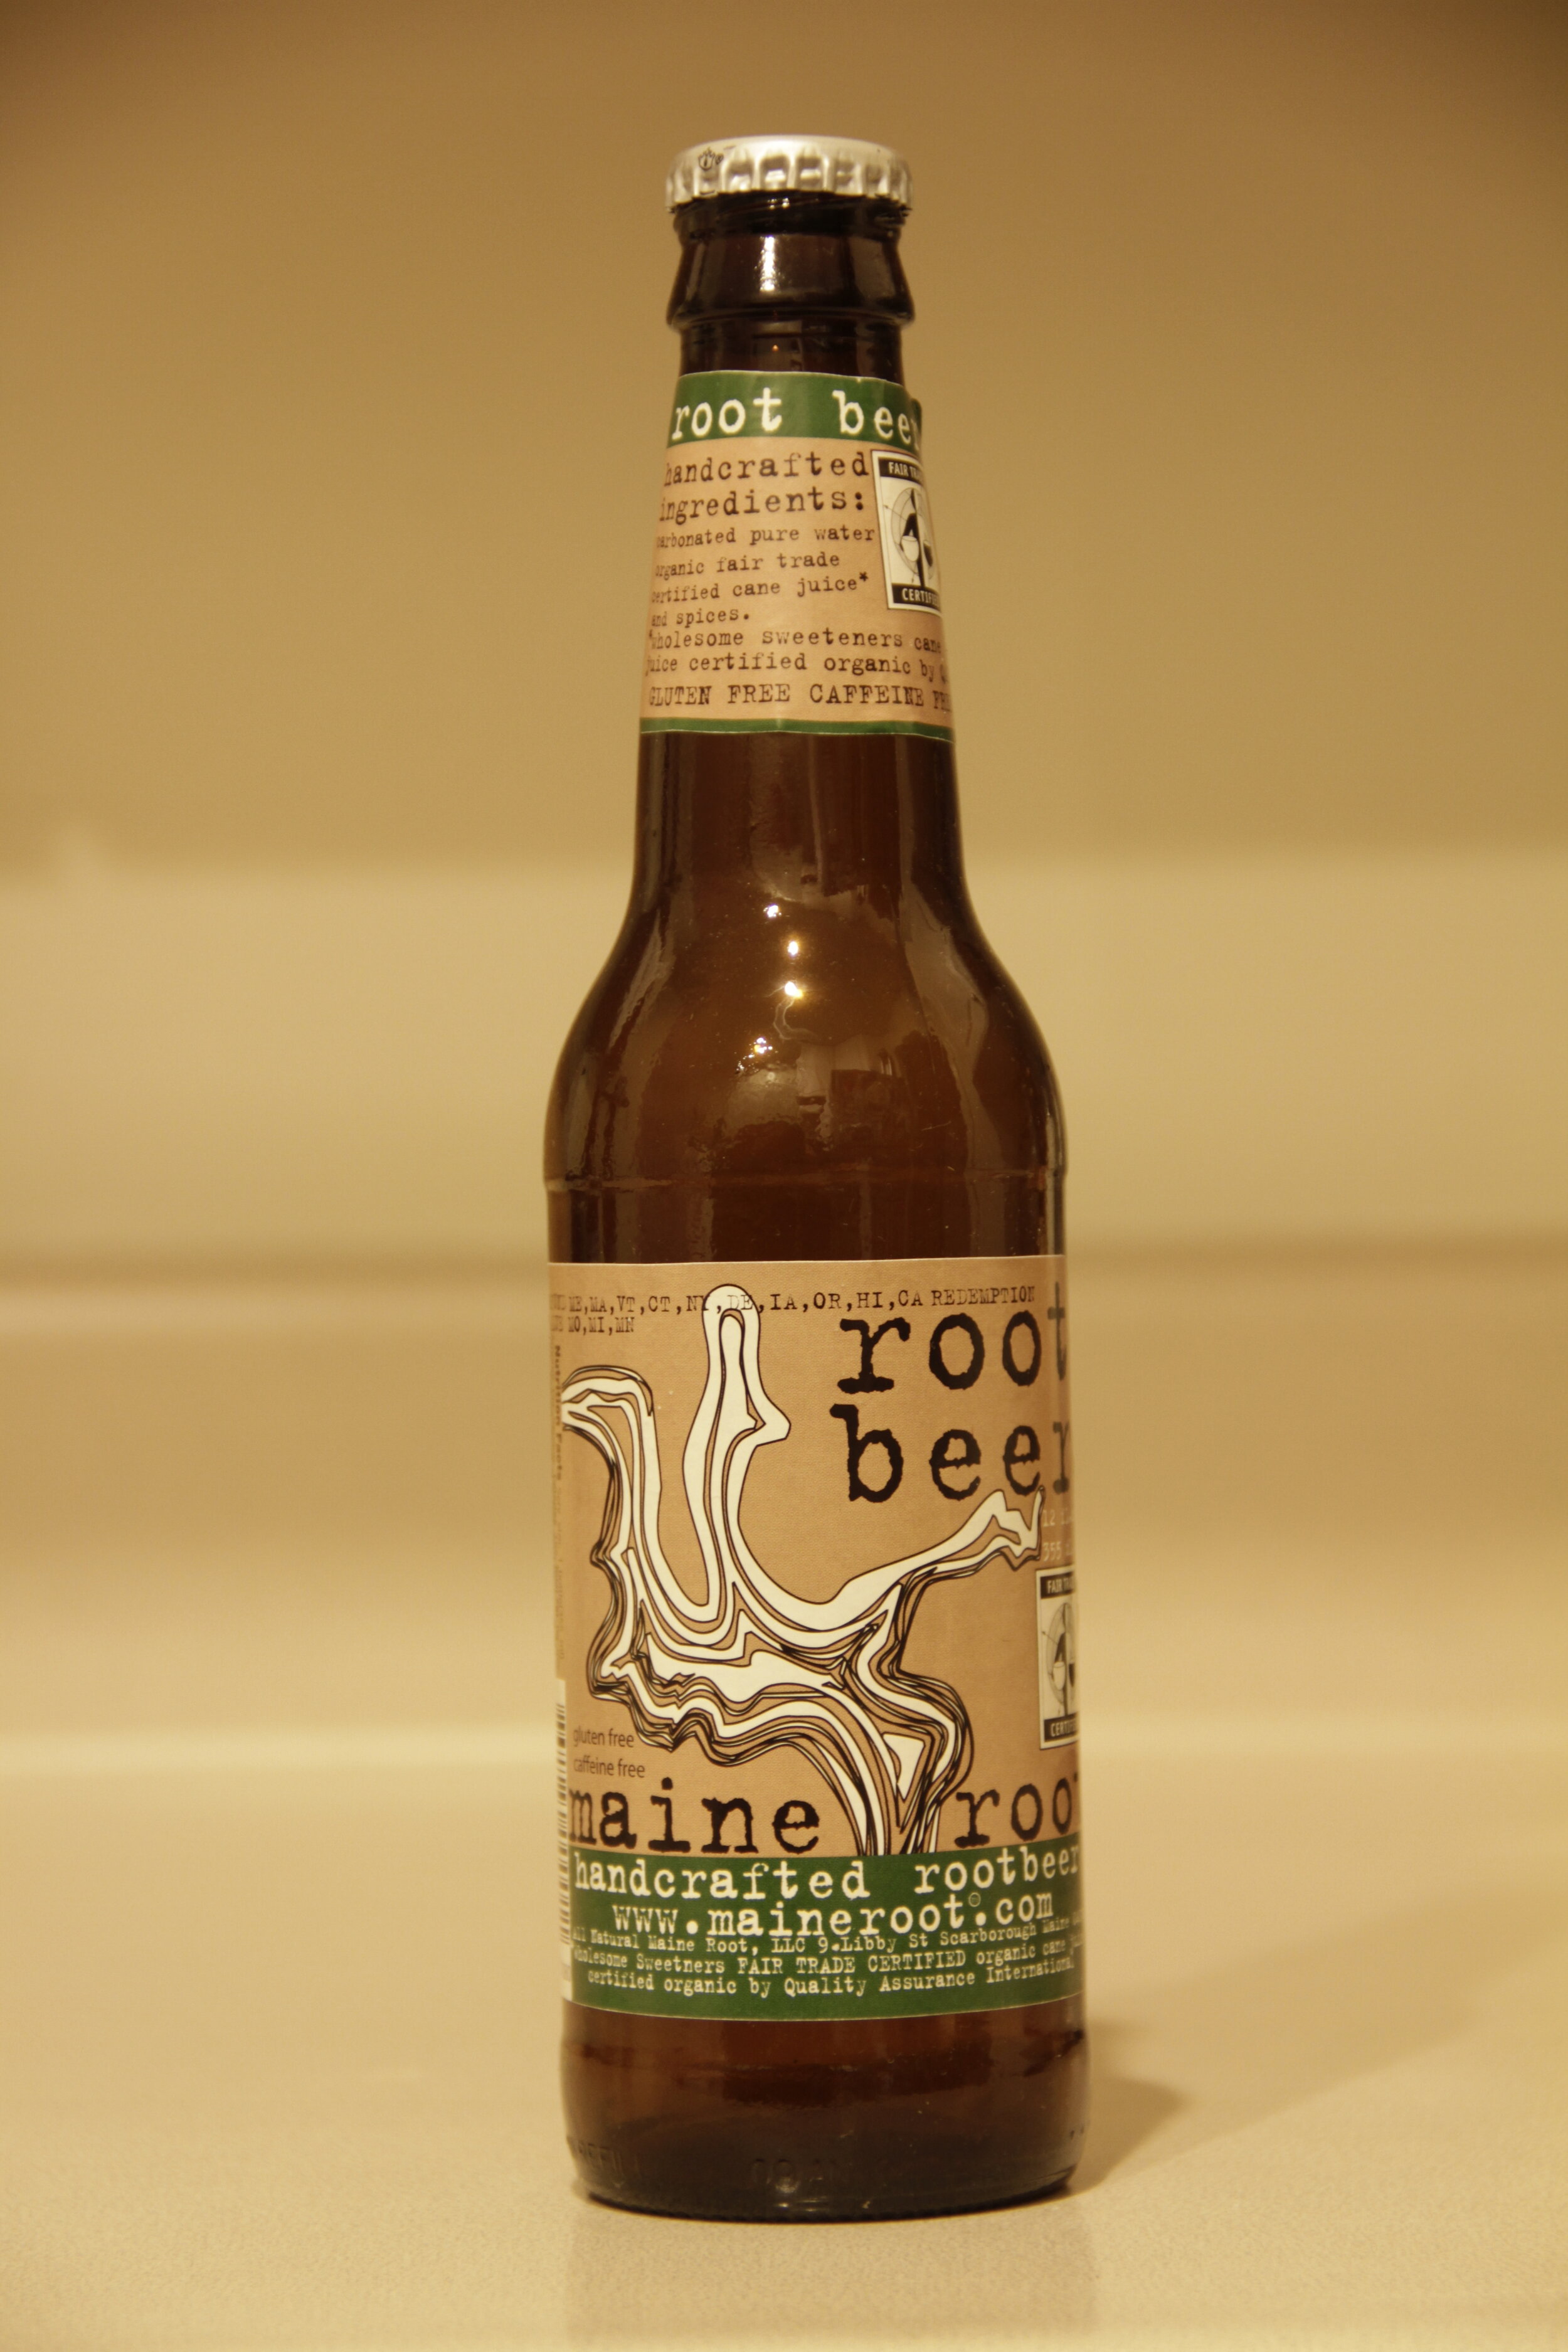 Maine Root (bottle).JPG